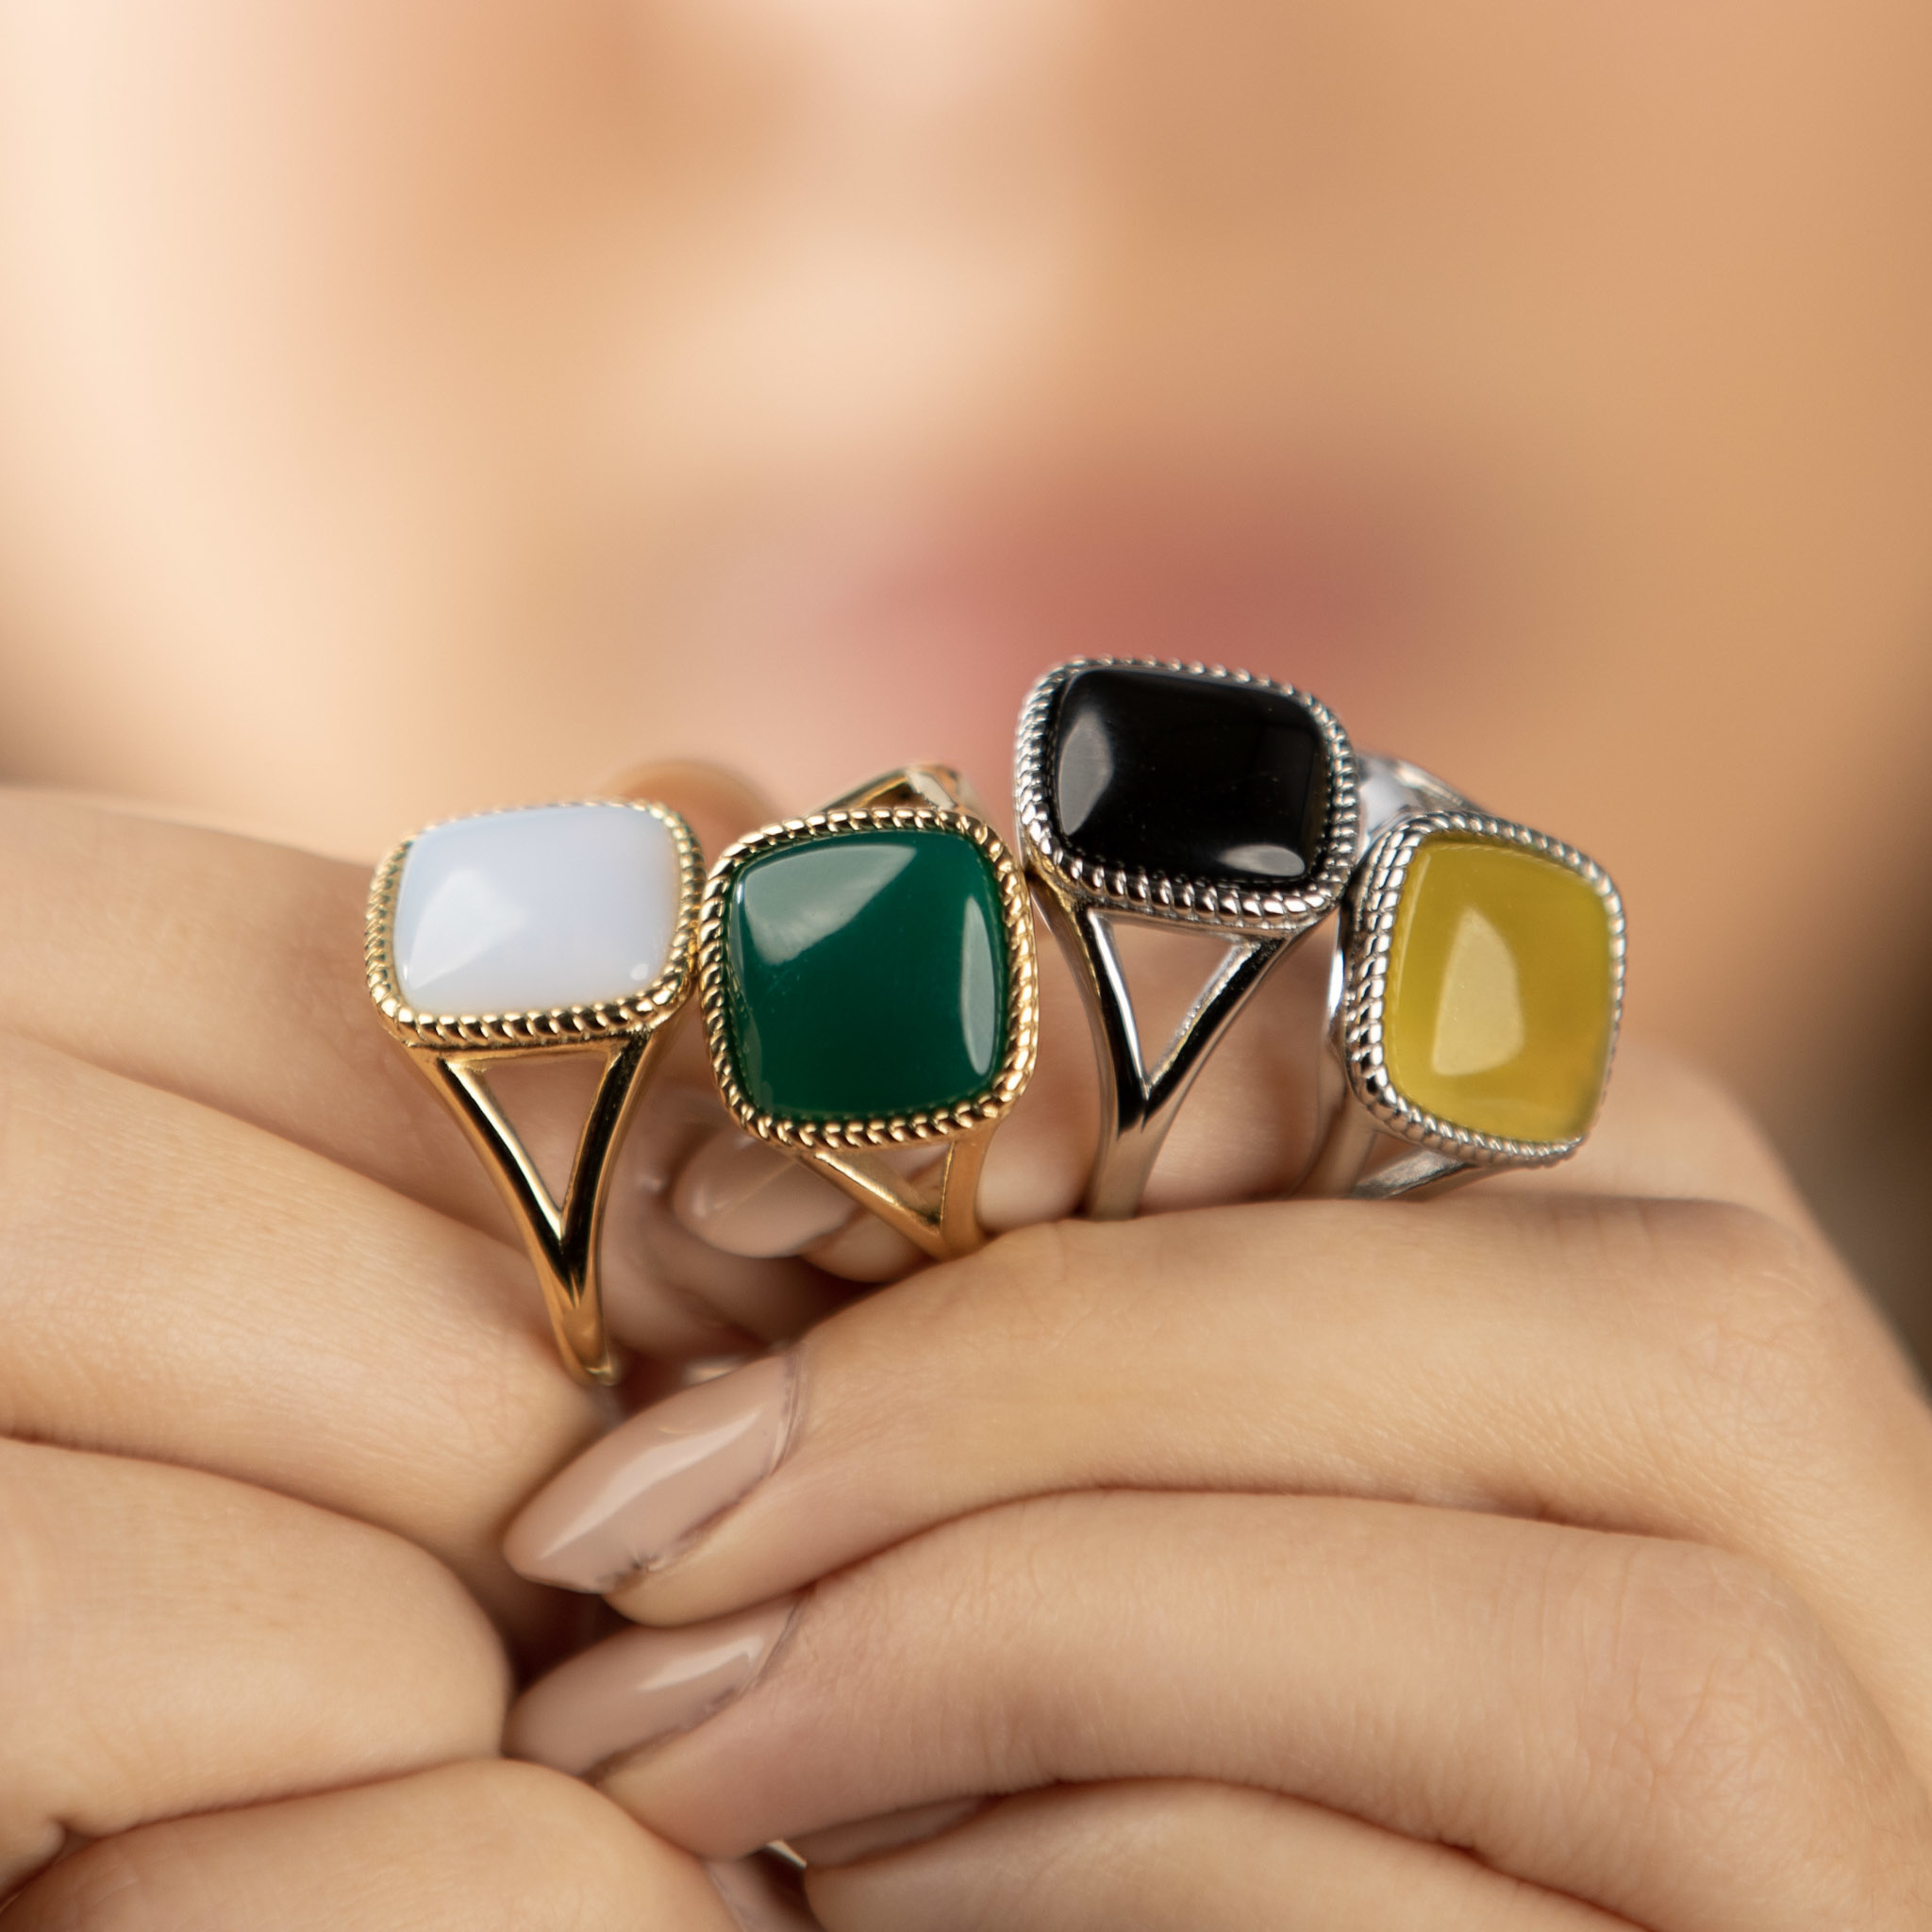 Regeringsverordening plakband Ellendig My Bendel - ring- goud met echte Agaat edelsteen in mooie groene kleur - My  Bendel